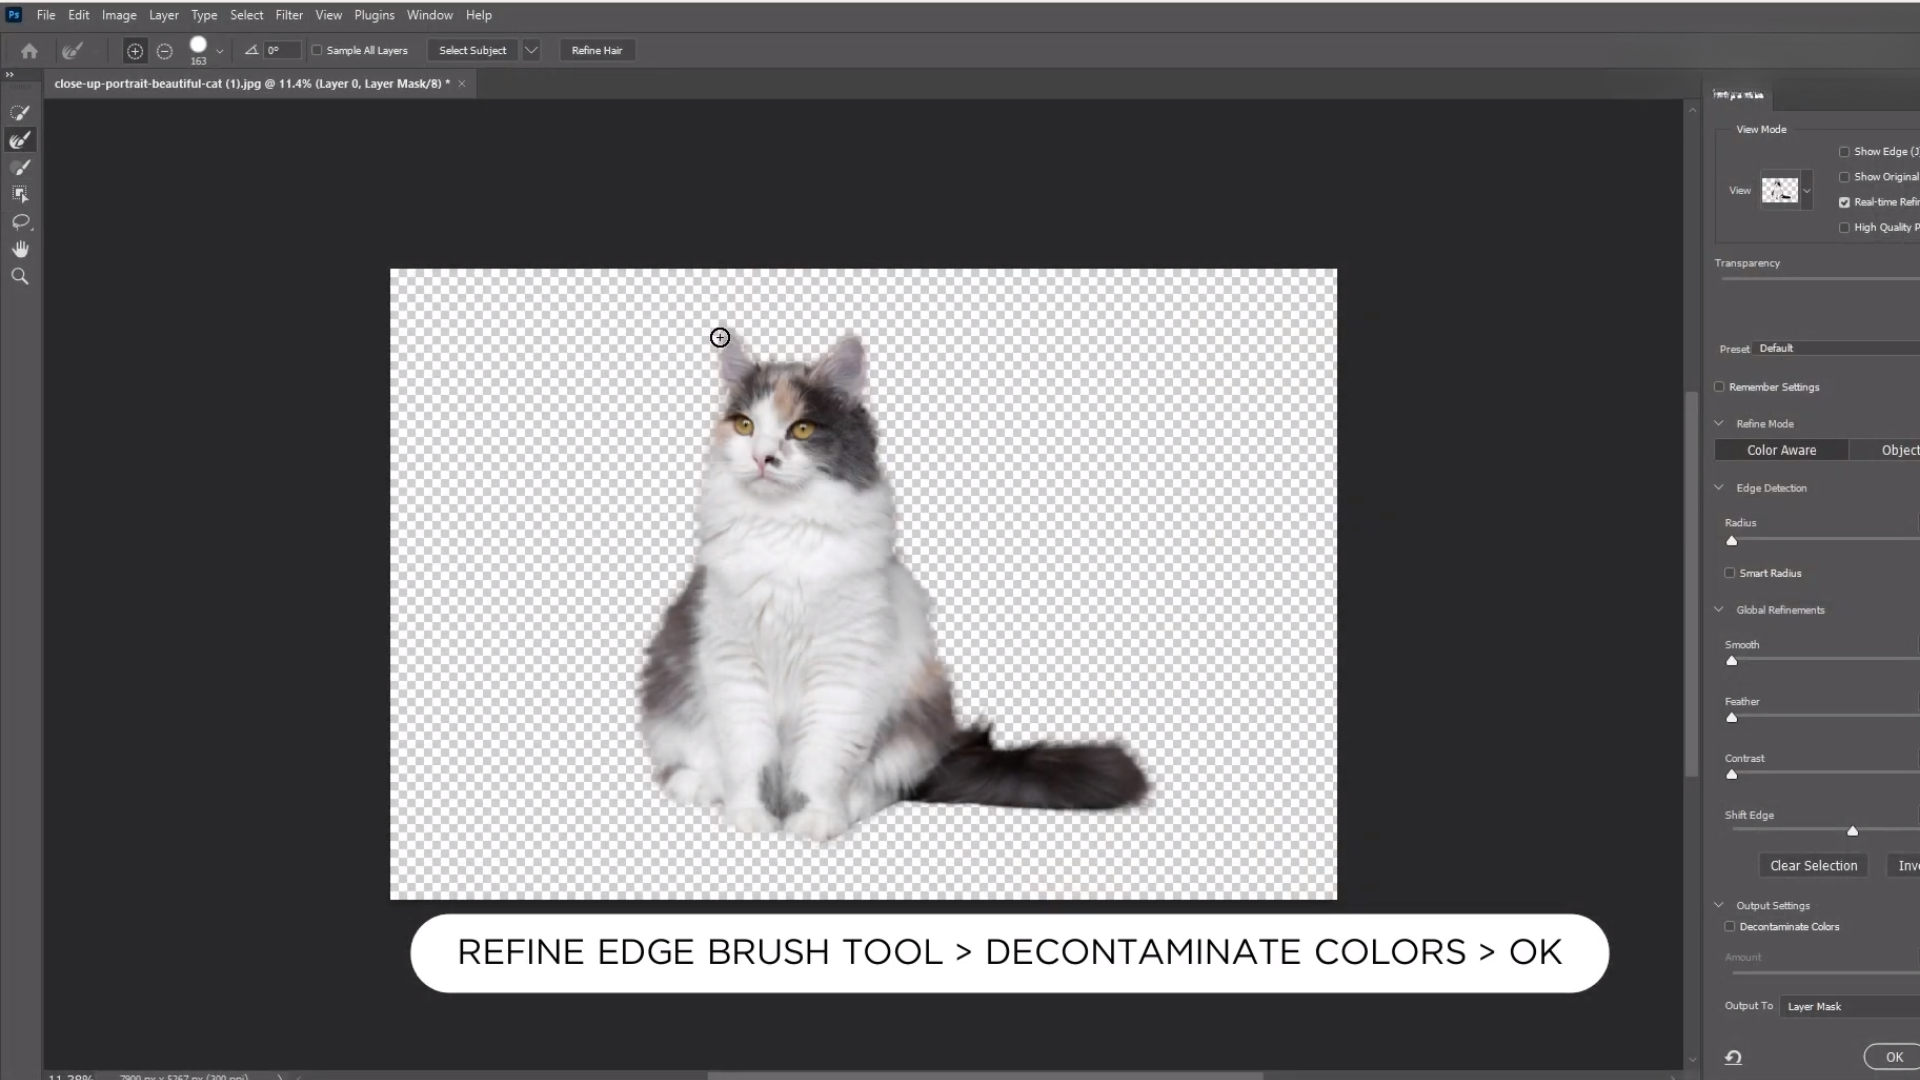 สอนไดคัทขนสัตว์ง่ายๆ ใน 1 นาที ด้วย Canva และ Photoshop มาต่อกันที่ Adobe Photoshop